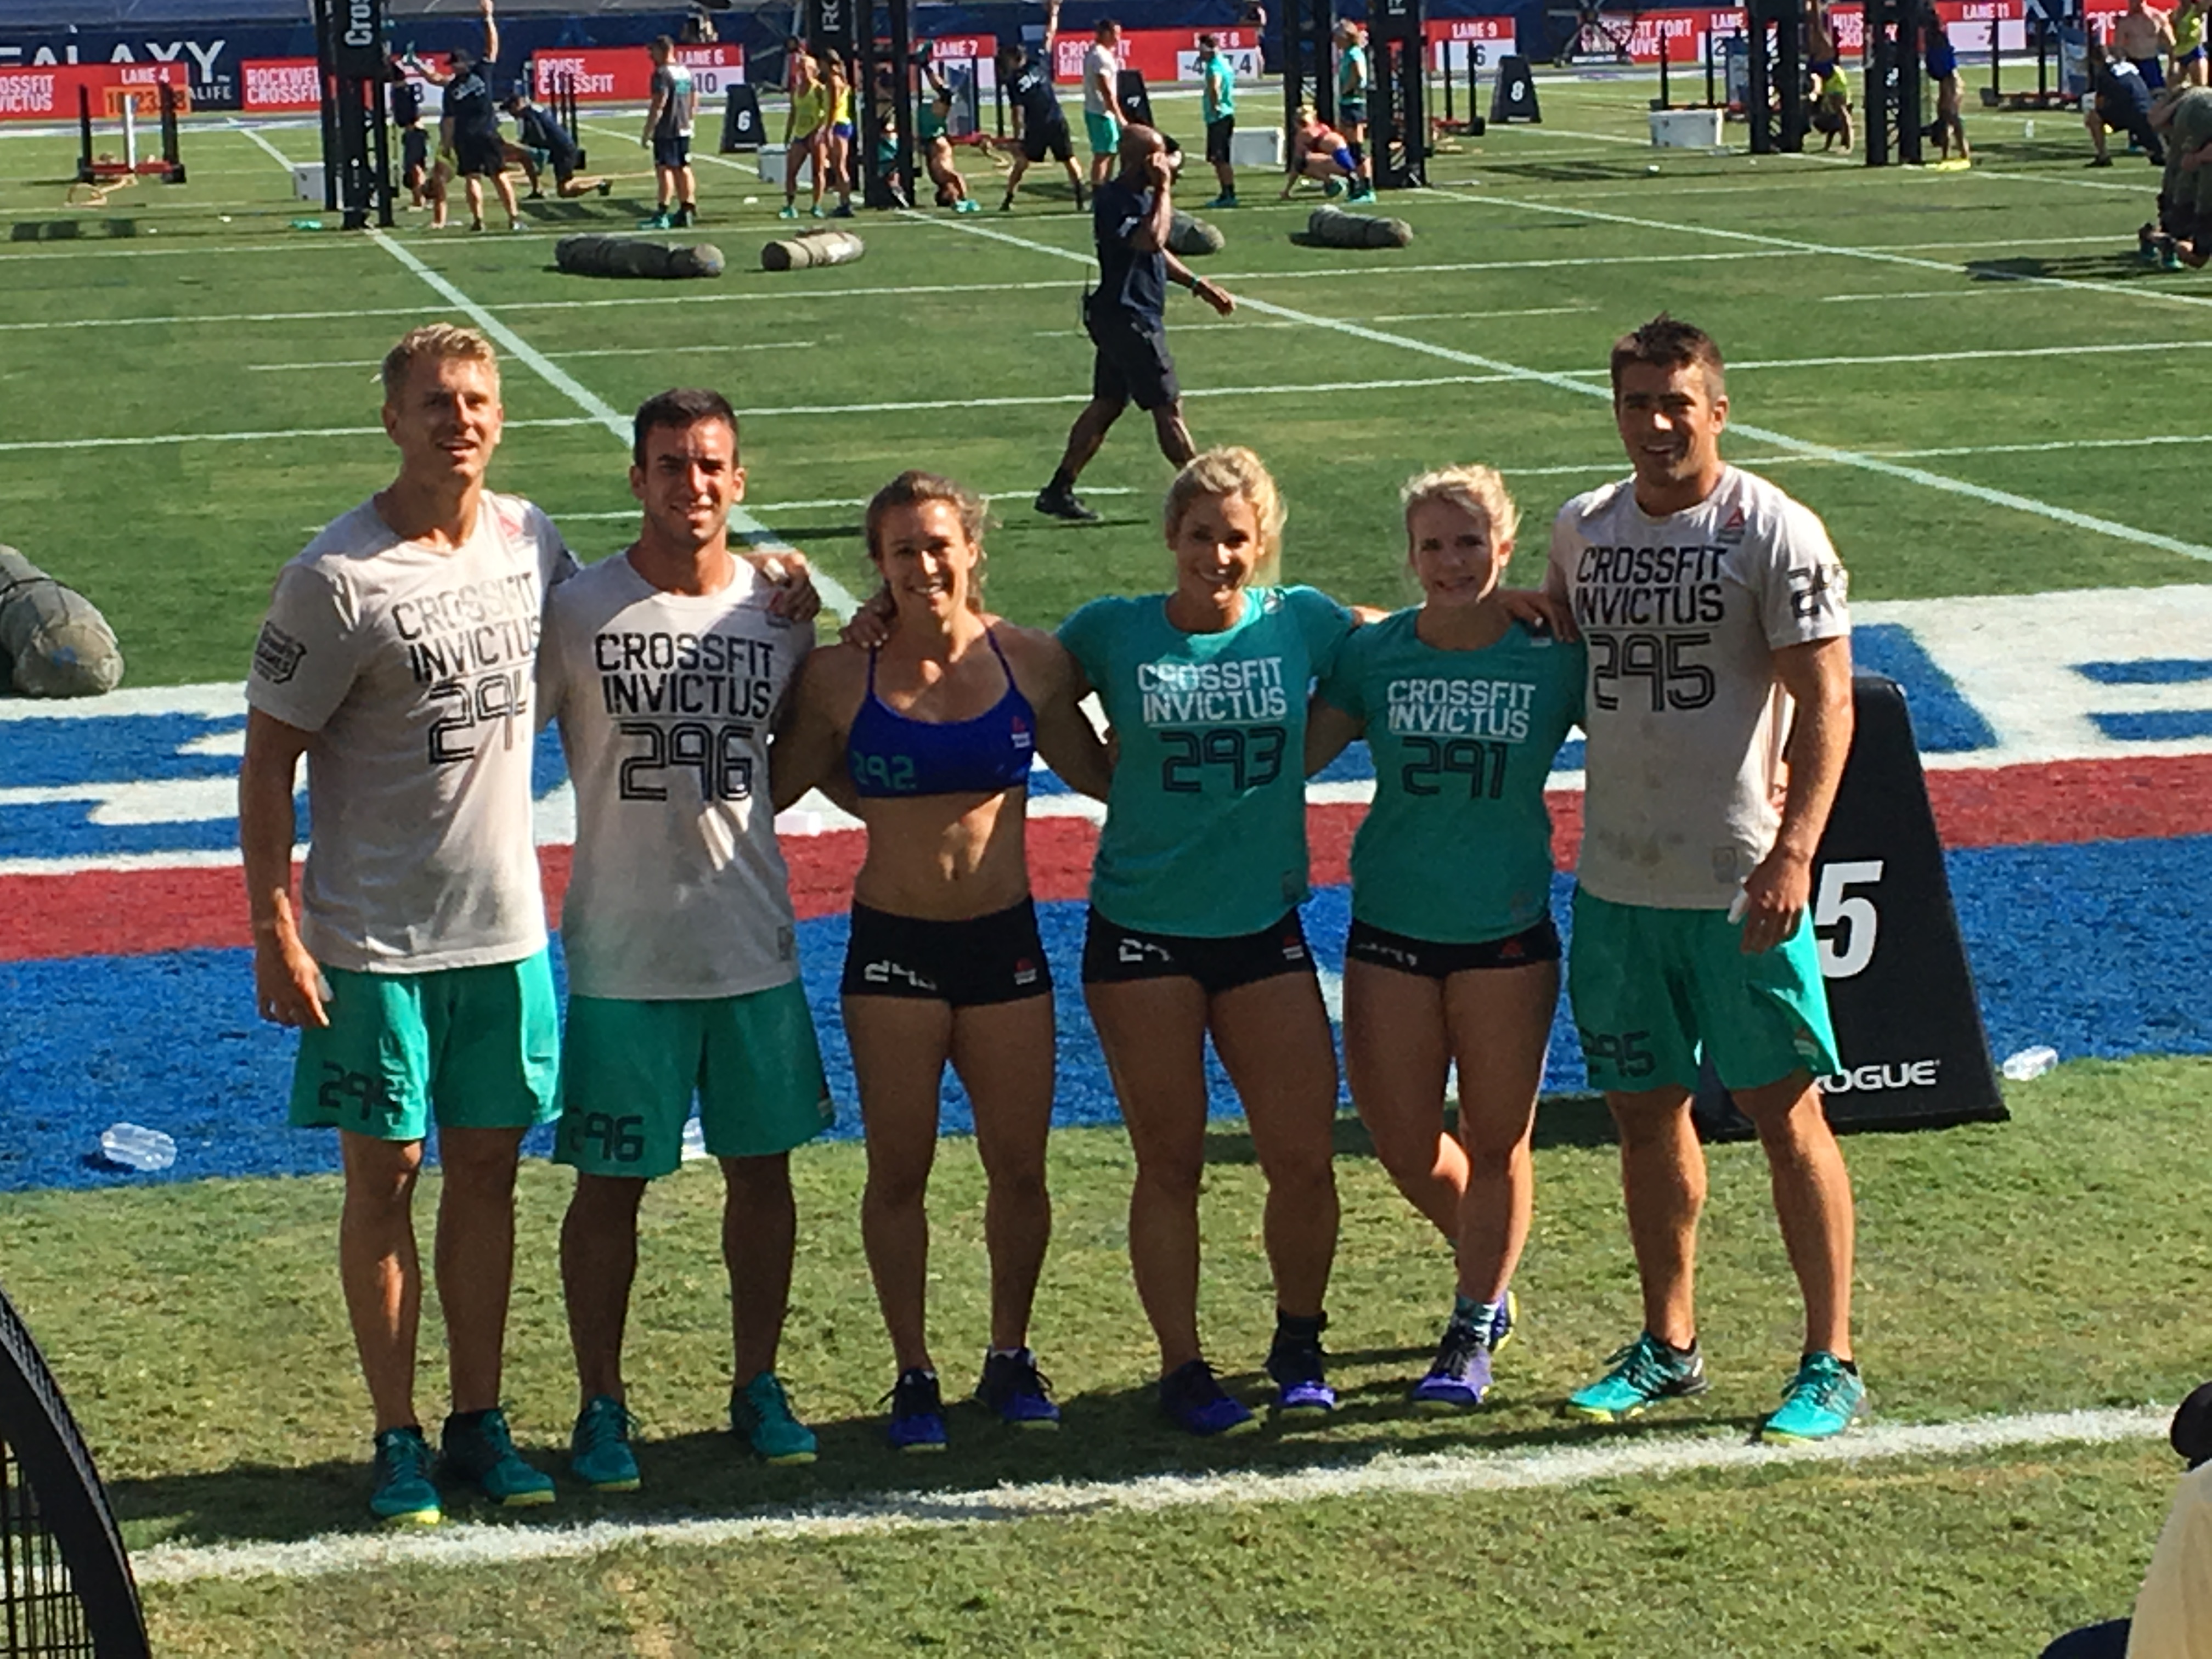 Team Invictus at the 2016 CrossFit Games